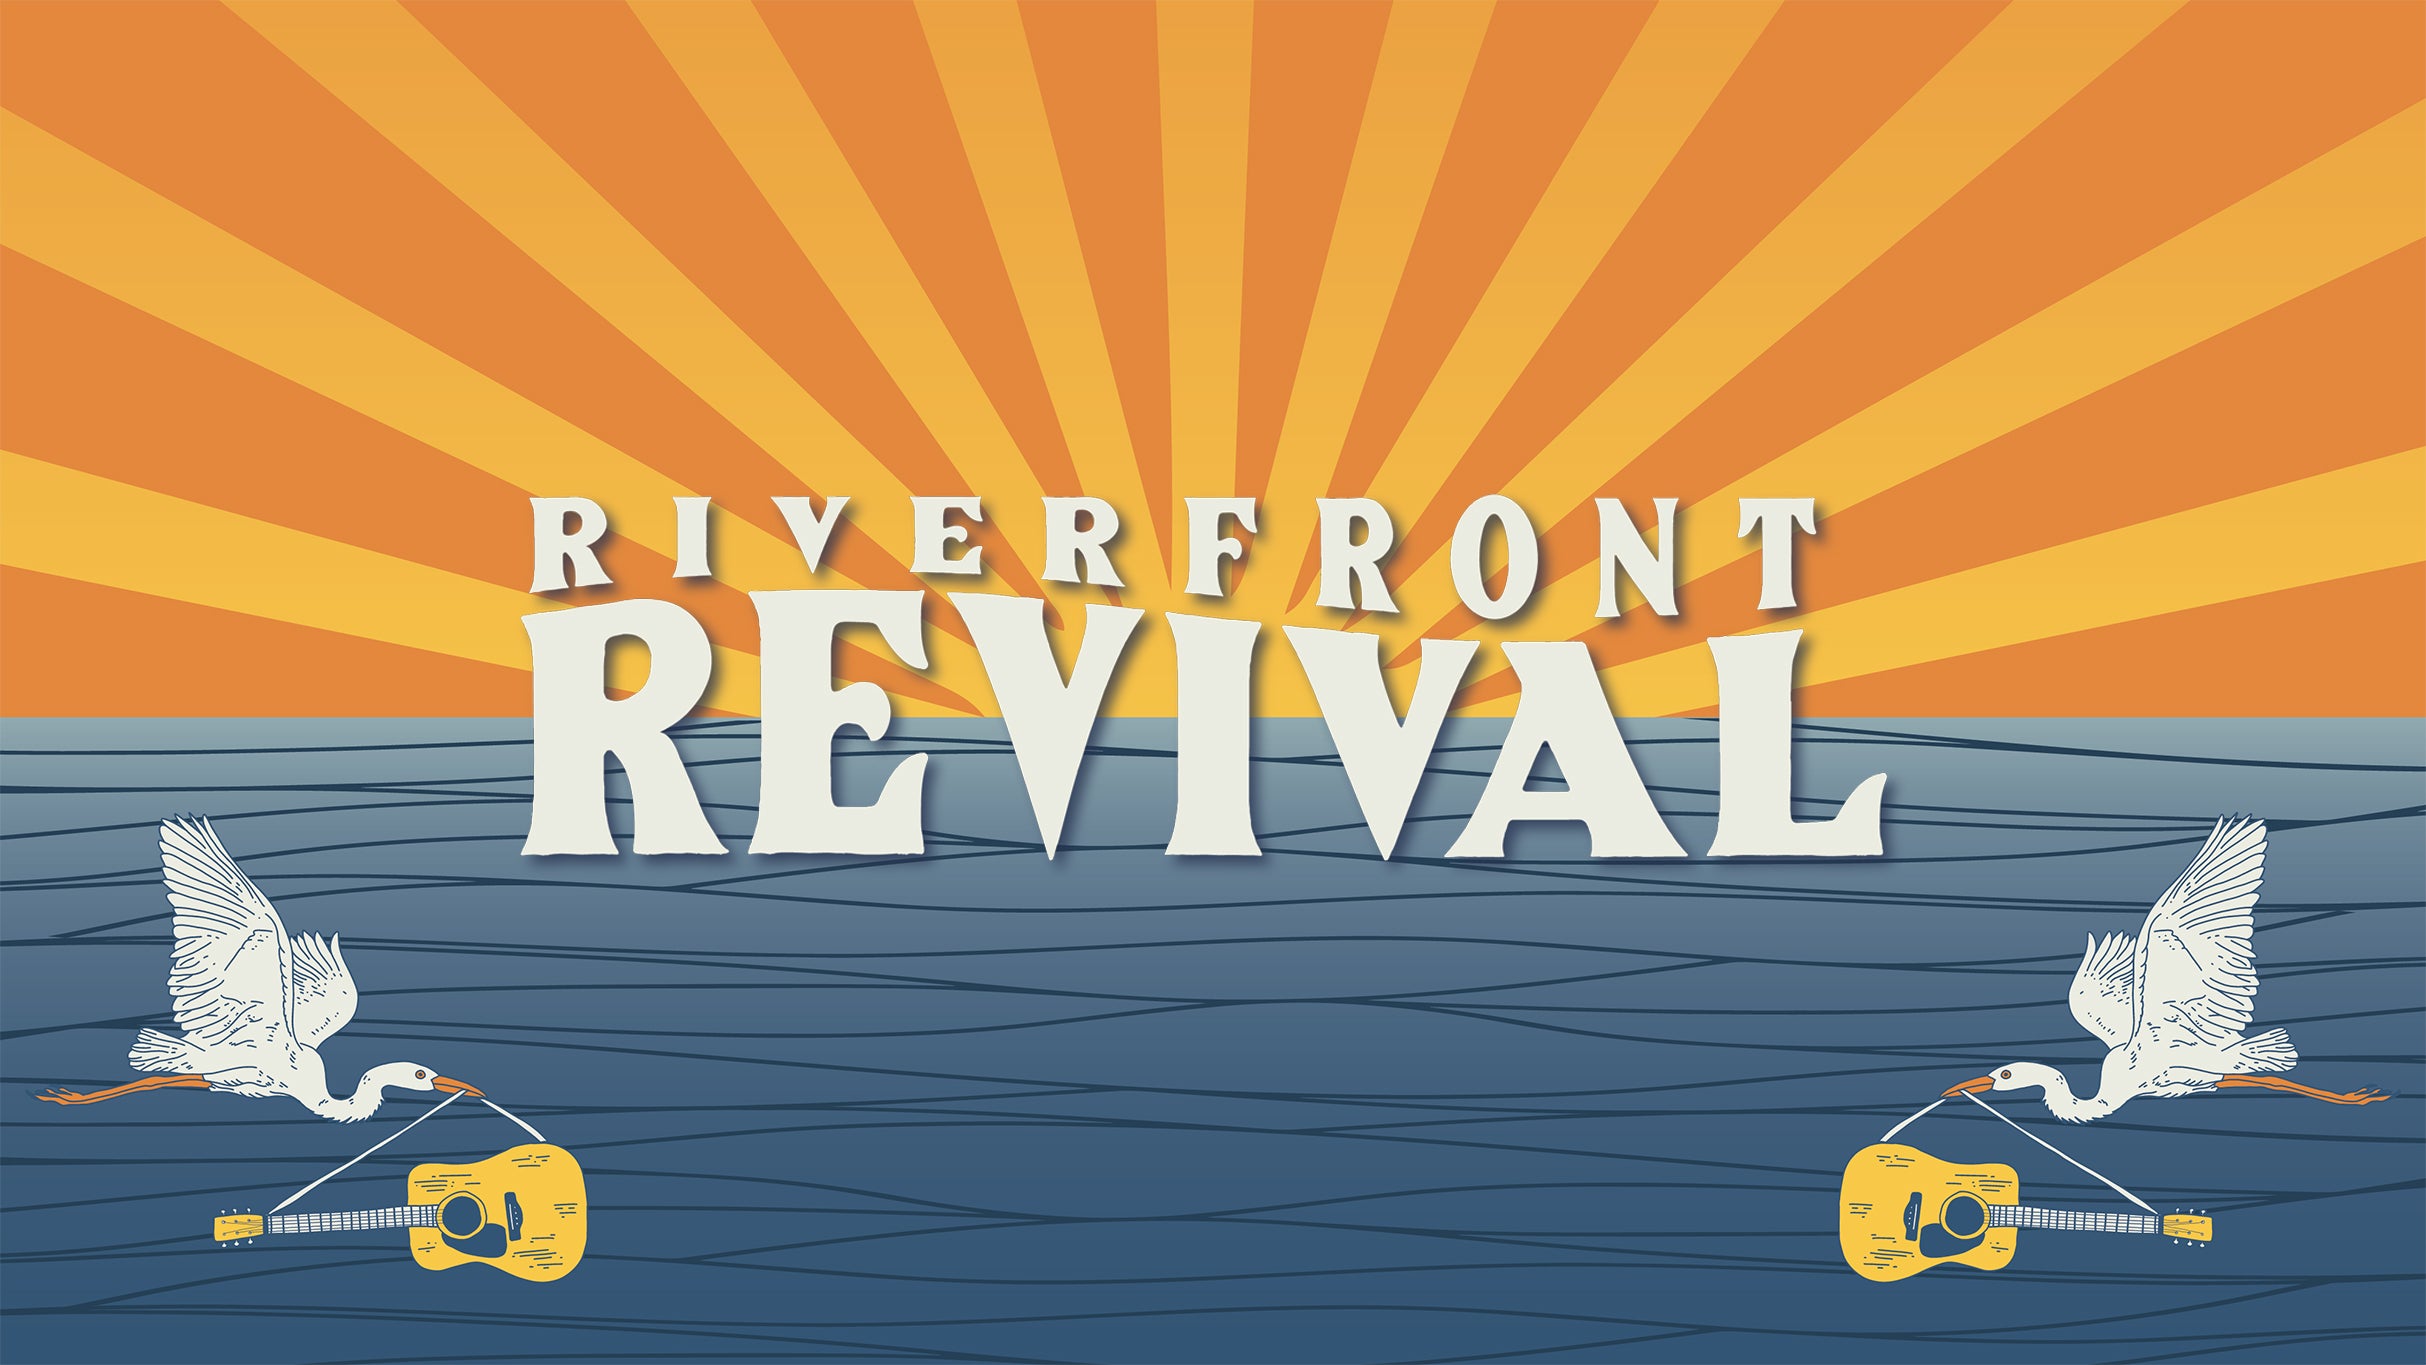 Riverfront Revival presale information on freepresalepasswords.com